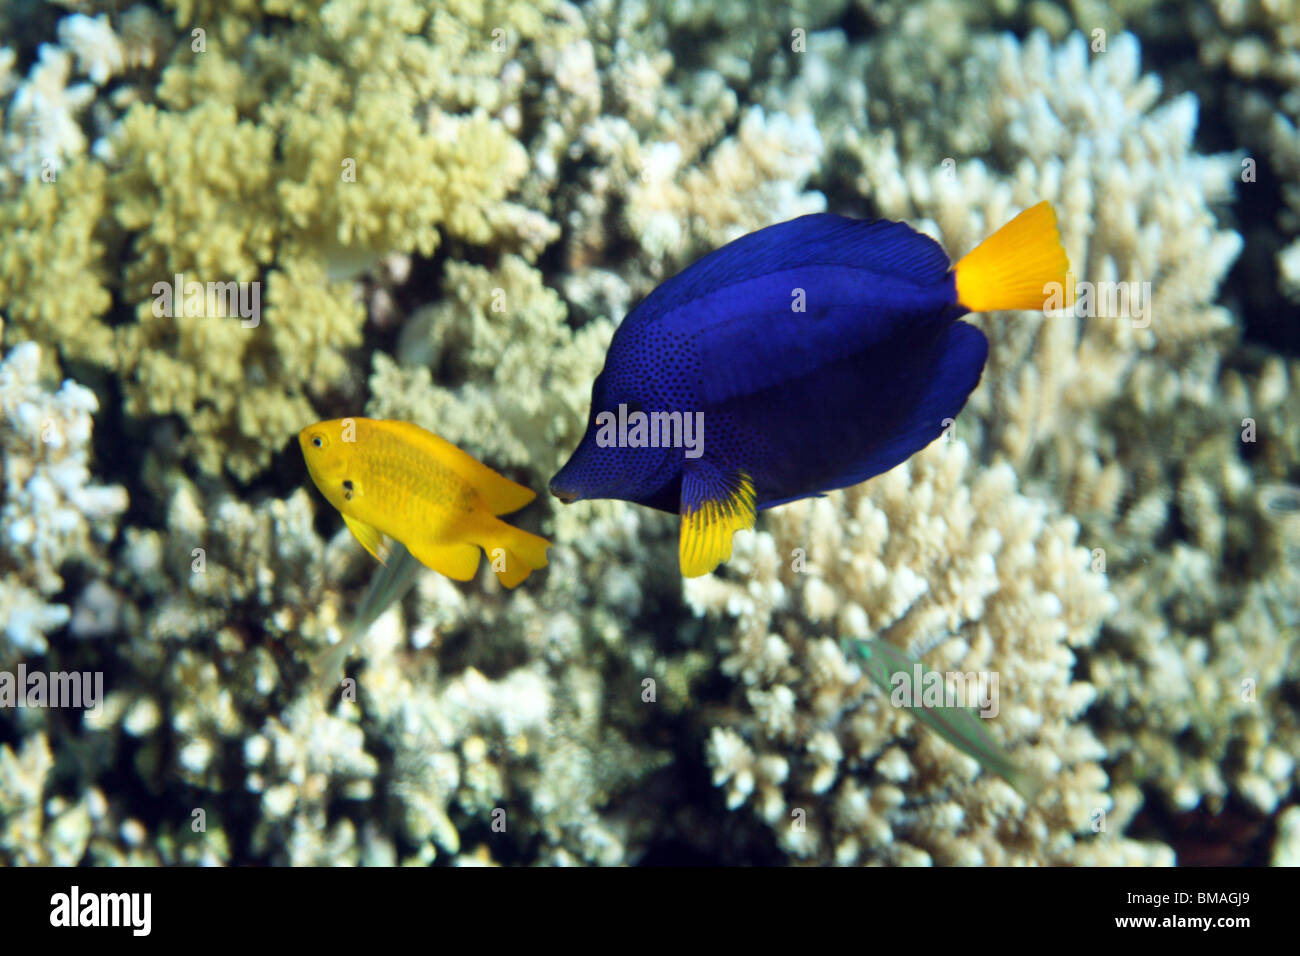 Yellowtail Surgeonfish (Zebrasoma xanthurum), coral reef, Red sea, Egypt. Stock Photo